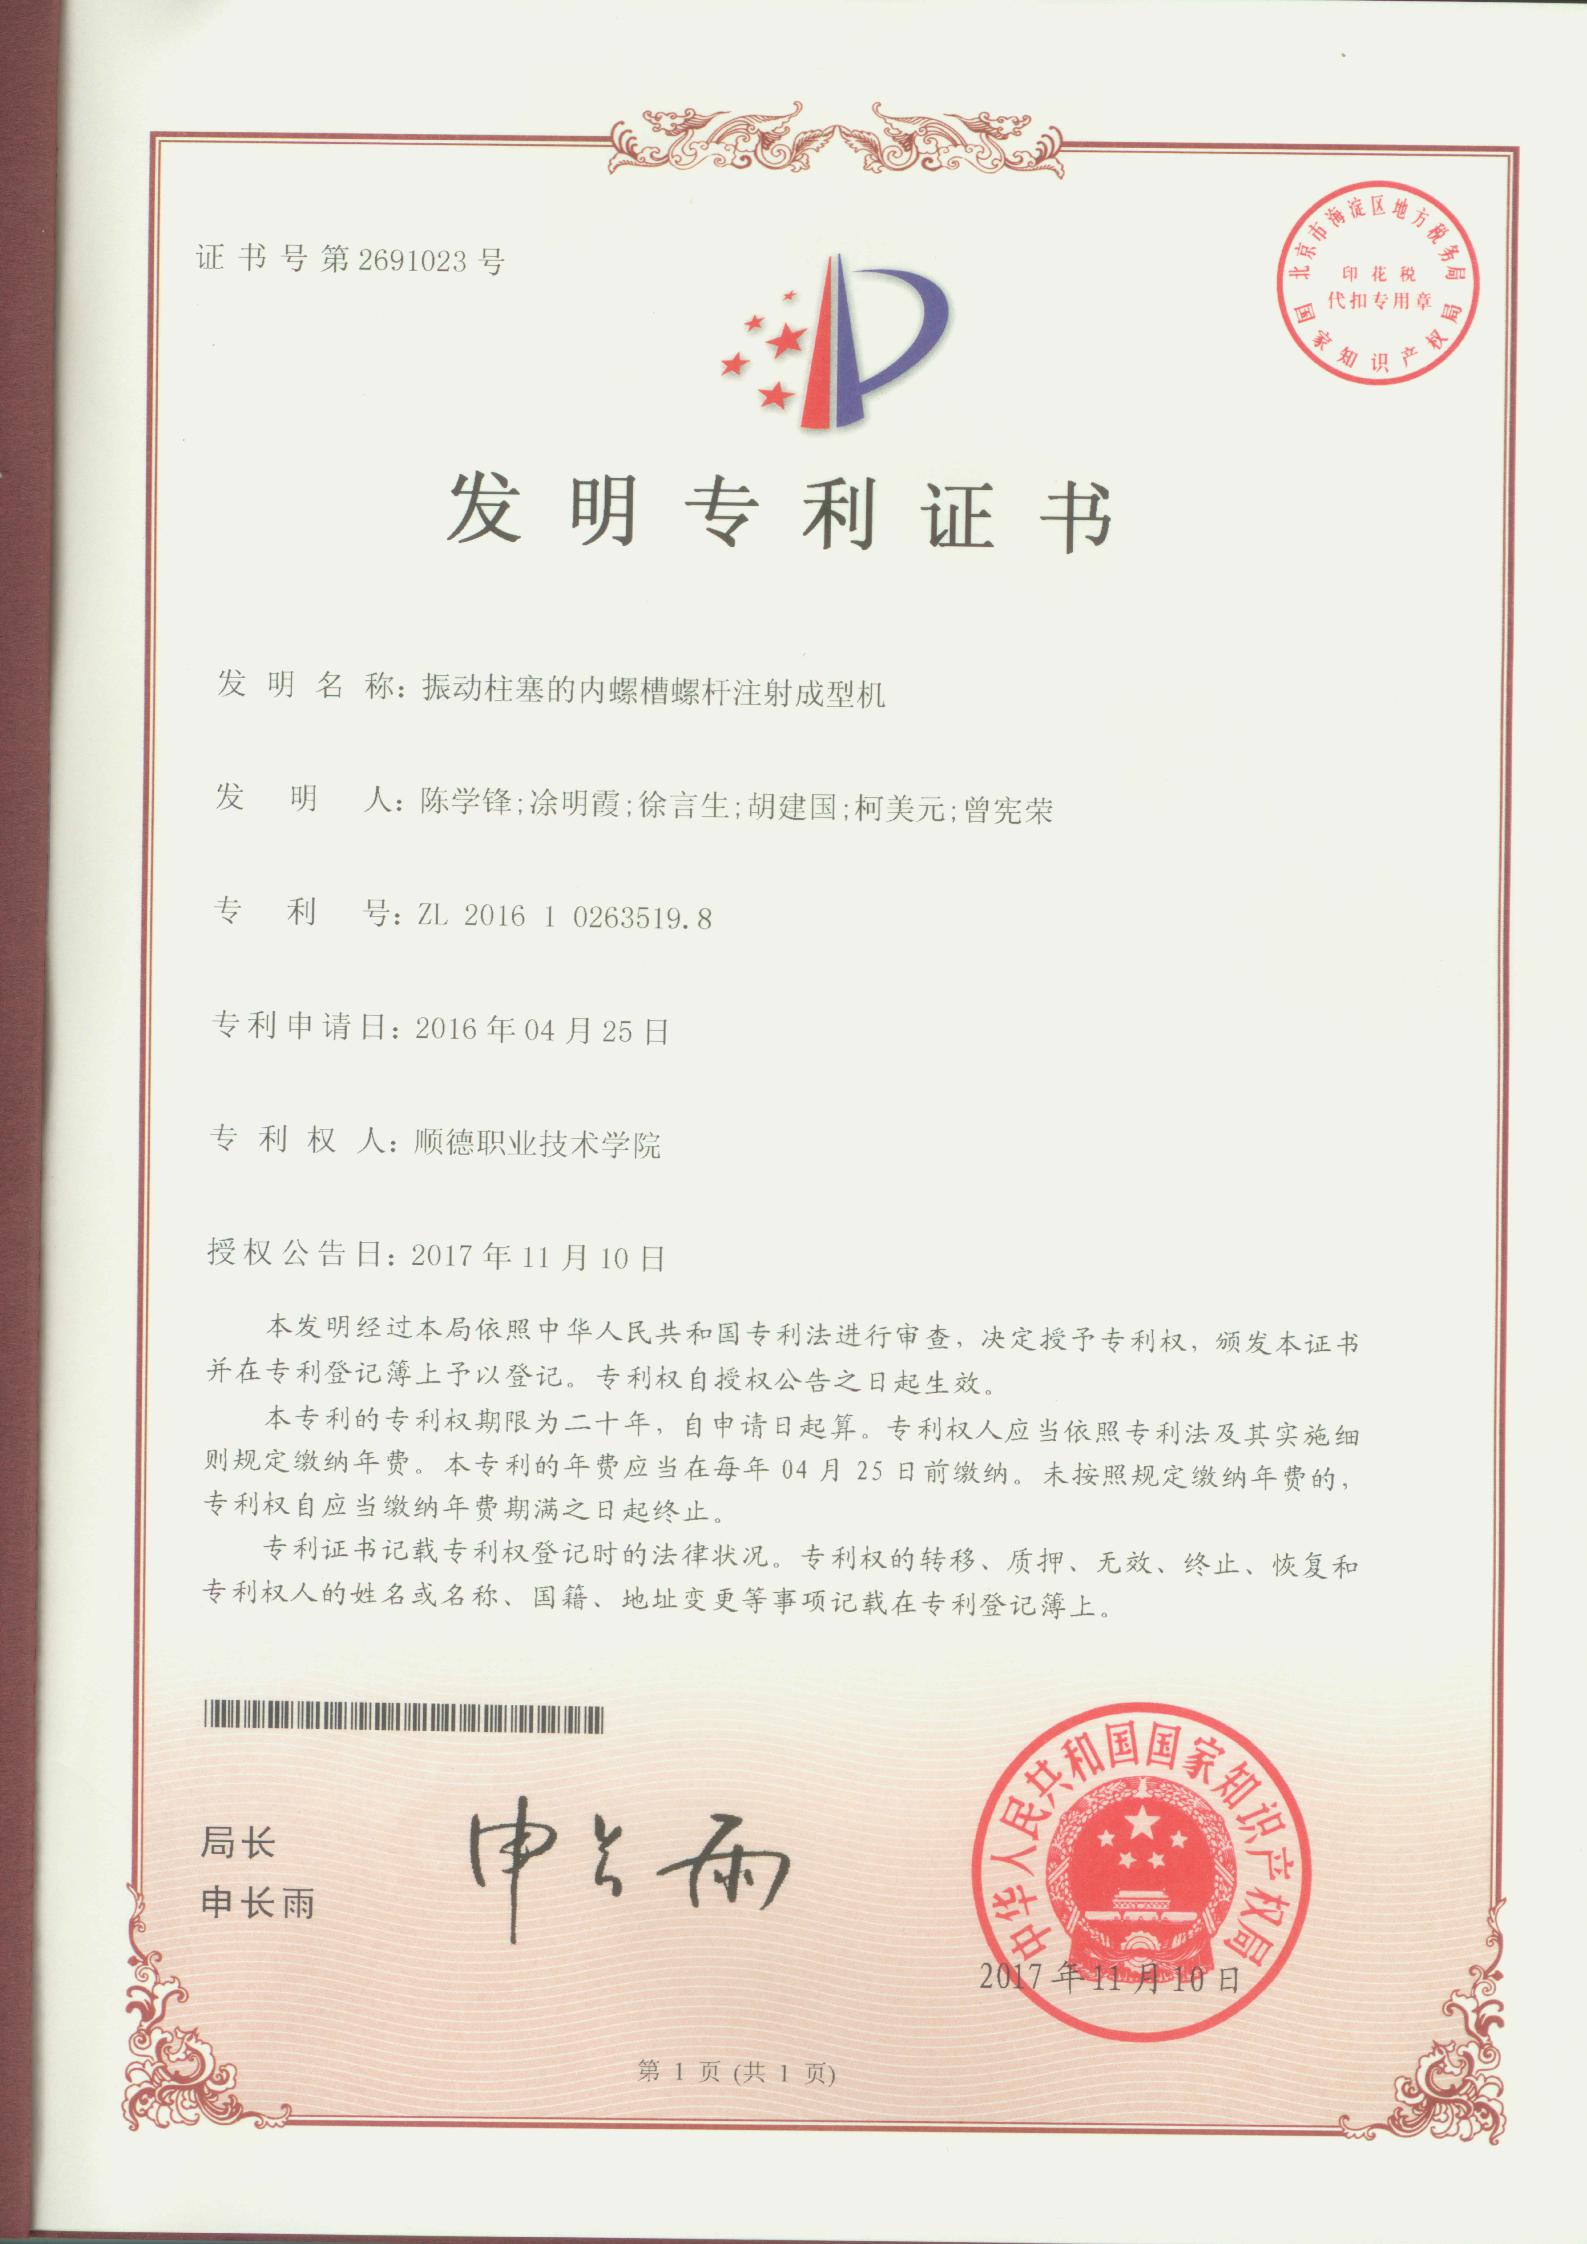 15.振动柱塞的内螺槽螺杆注射成型机-中国发明专利证书_00.jpg